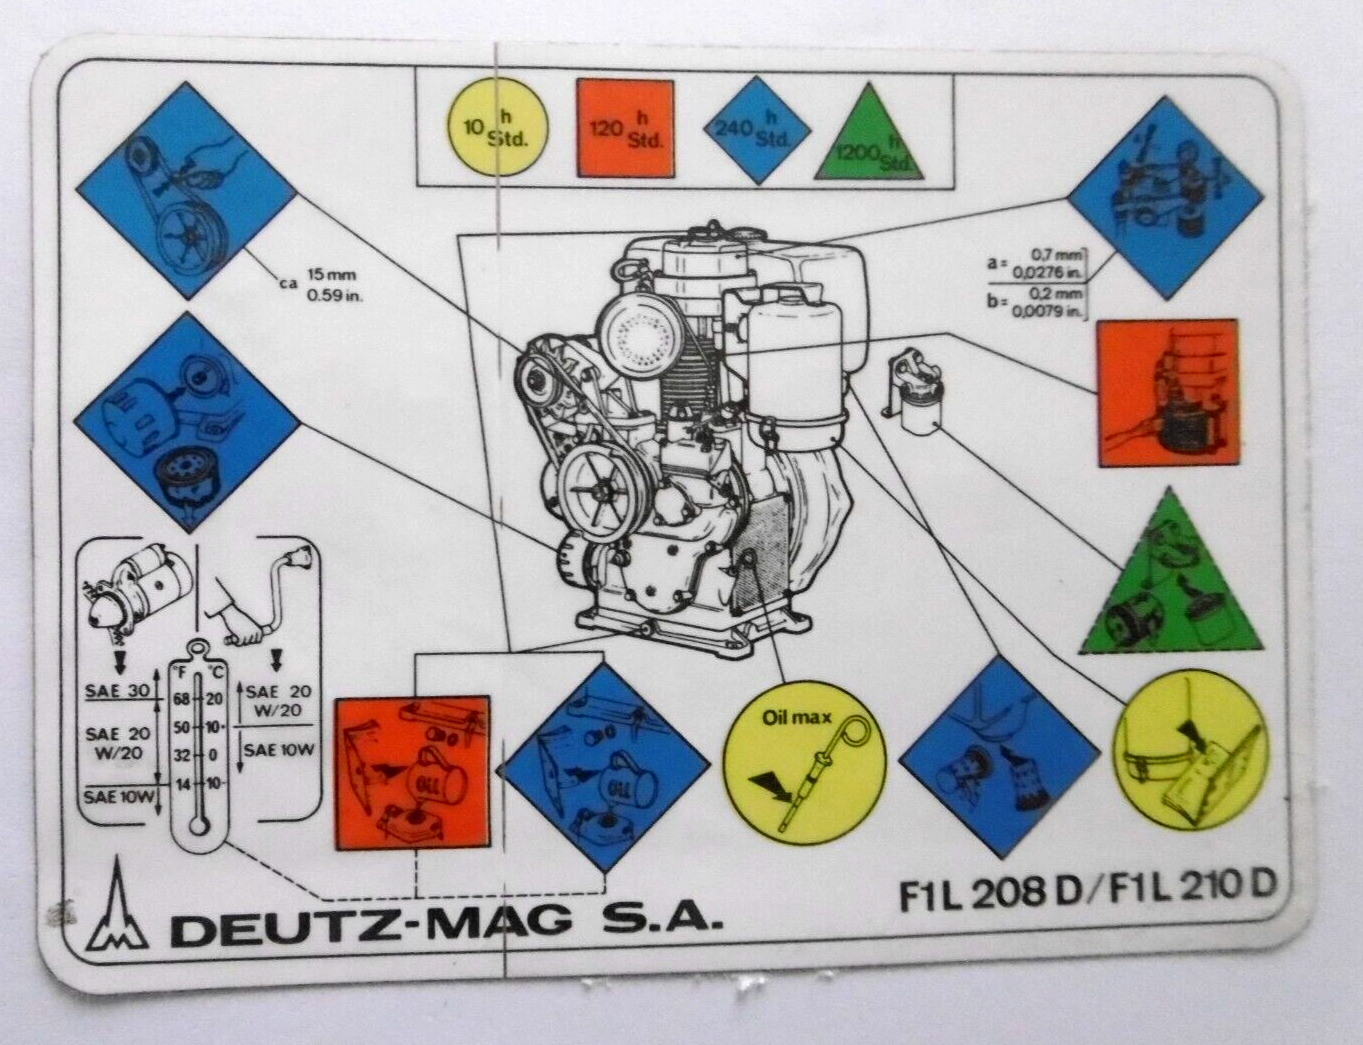 Service-Aufkleber Deutz-Mag S. A. Khd Motor F1L 208 D/F1L 210 D Drawing 70er